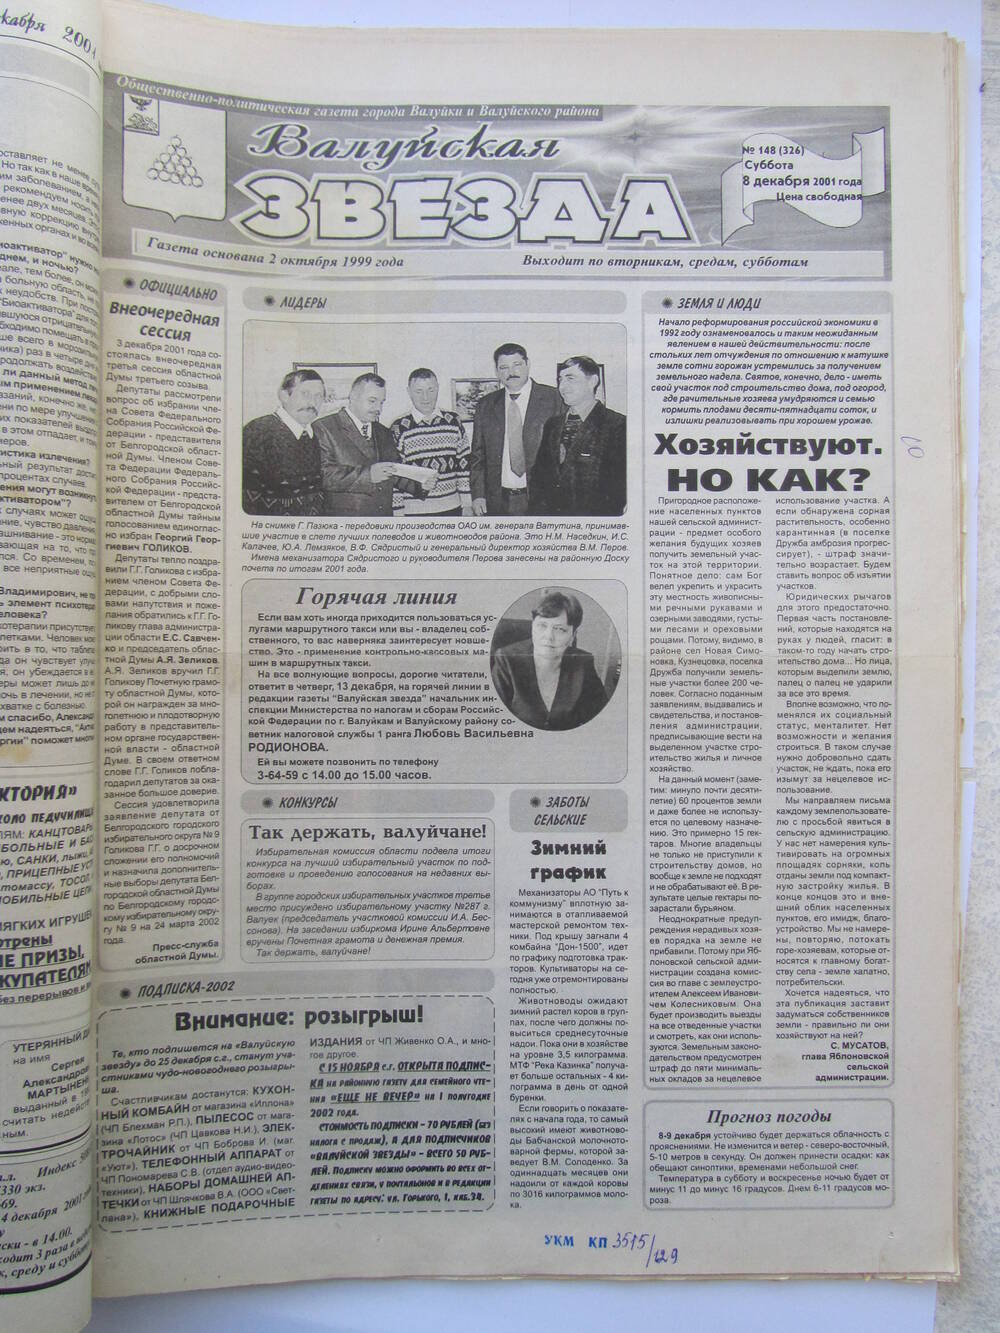 Газета Валуйская звезда №148 от 08.12.2001 г